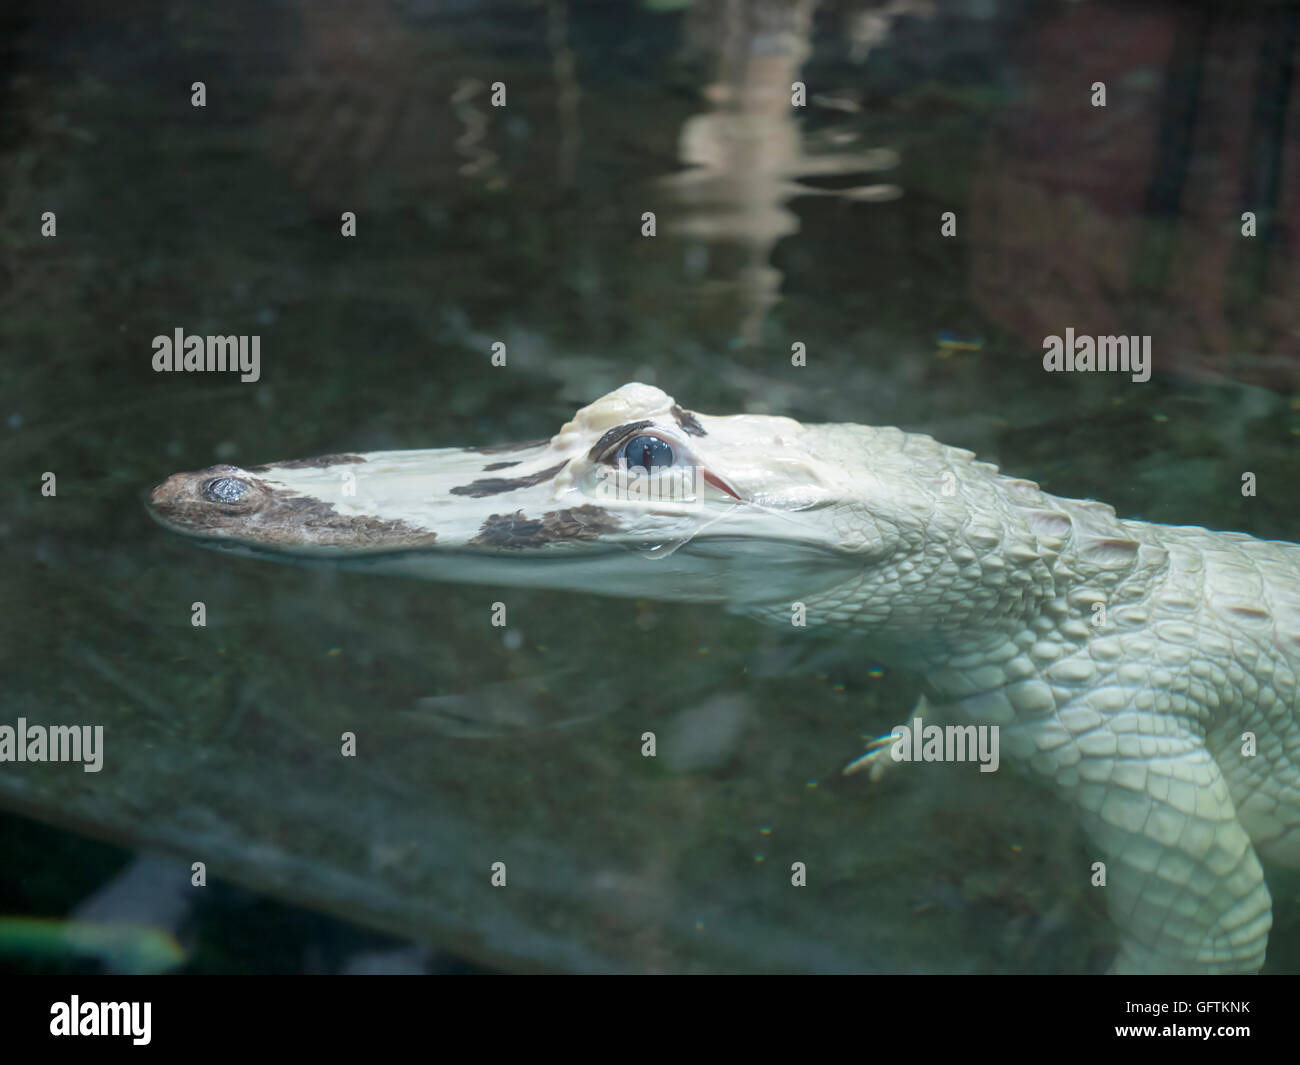 Leucistic, white alligator, Alligator mississippiensis, at the Audubon Aquarium of the Americas Stock Photo